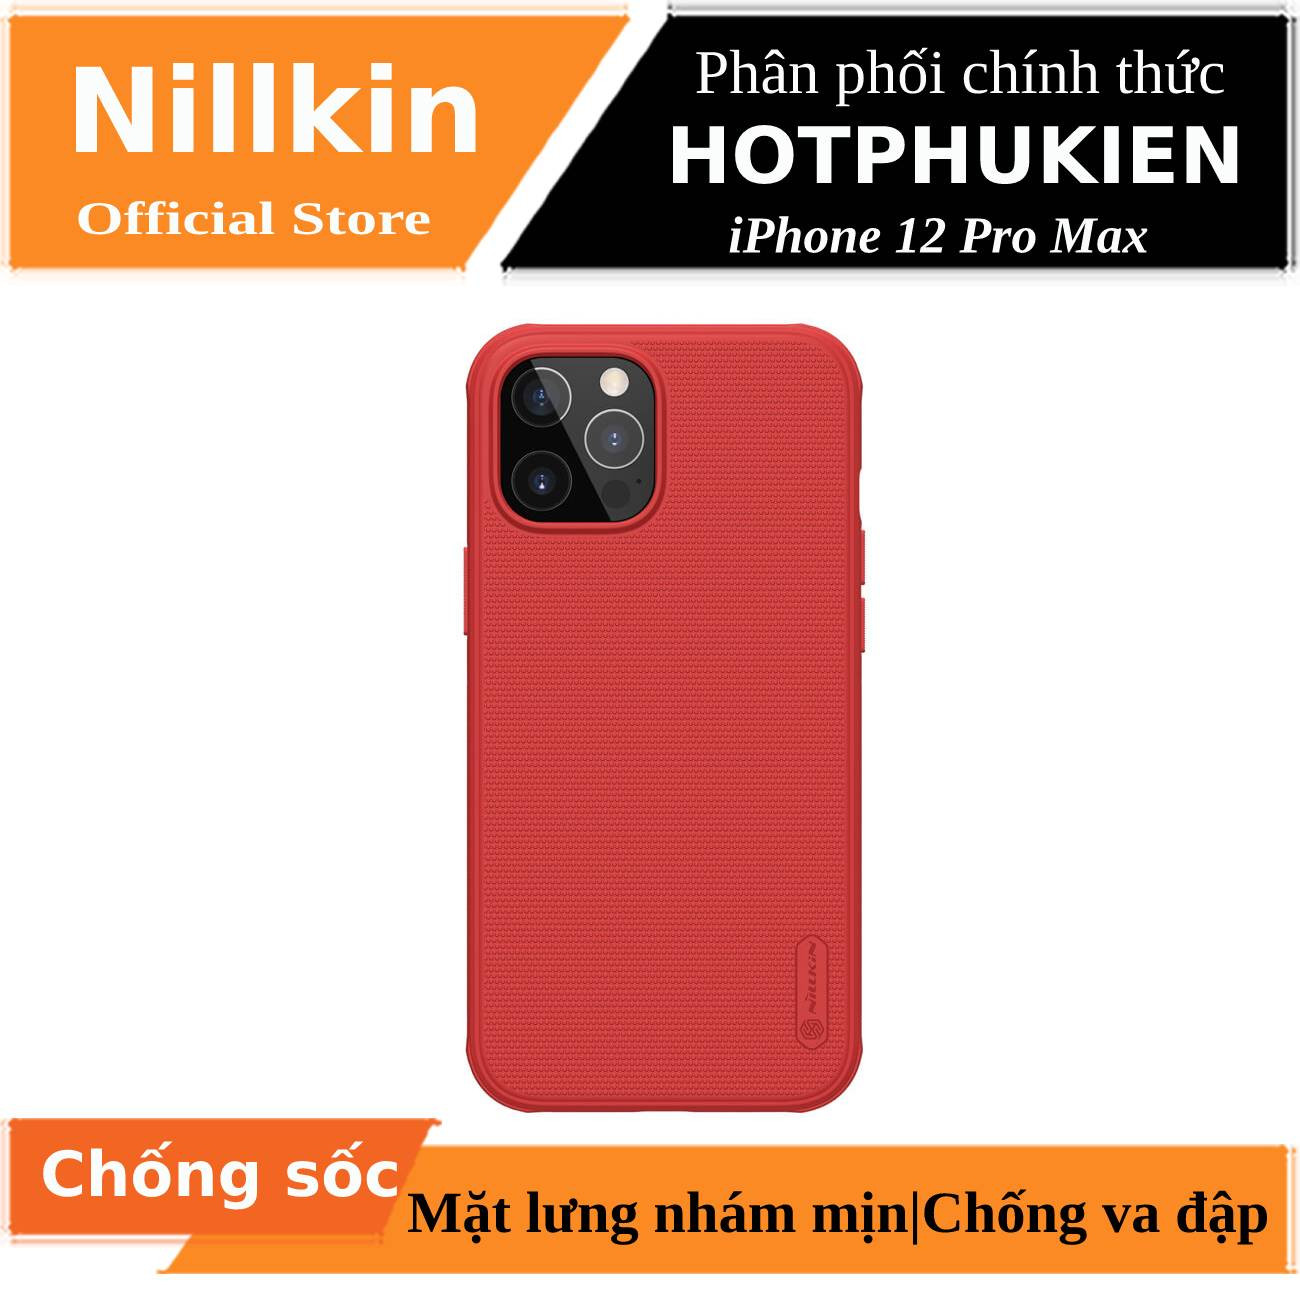 Ốp lưng iPhone 12 Pro Max 6.7 inch chống sốc mặt lưng nhám hiệu Nillkin Super Frosted Shield Pro